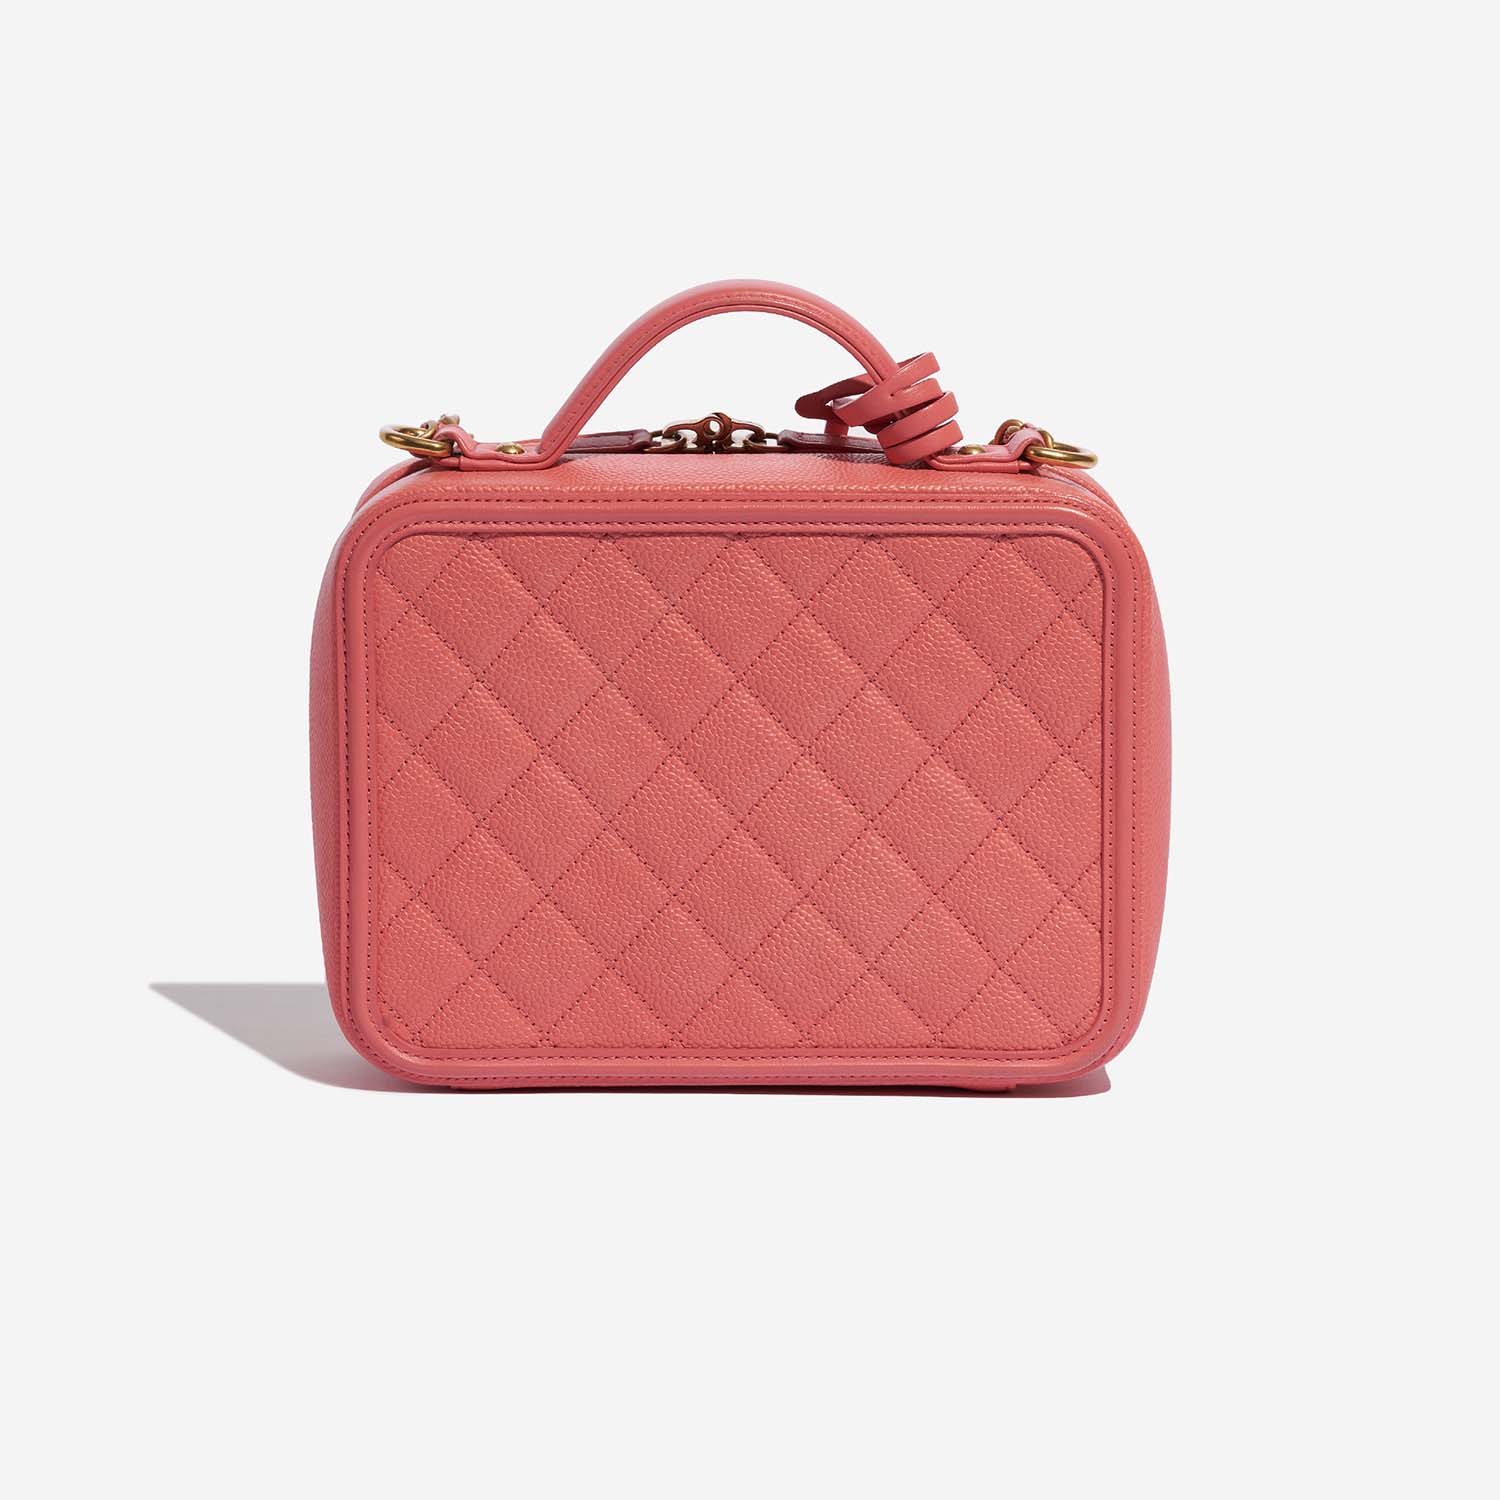 Chanel Vanity Medium Pink Back | Verkaufen Sie Ihre Designer-Tasche auf Saclab.com